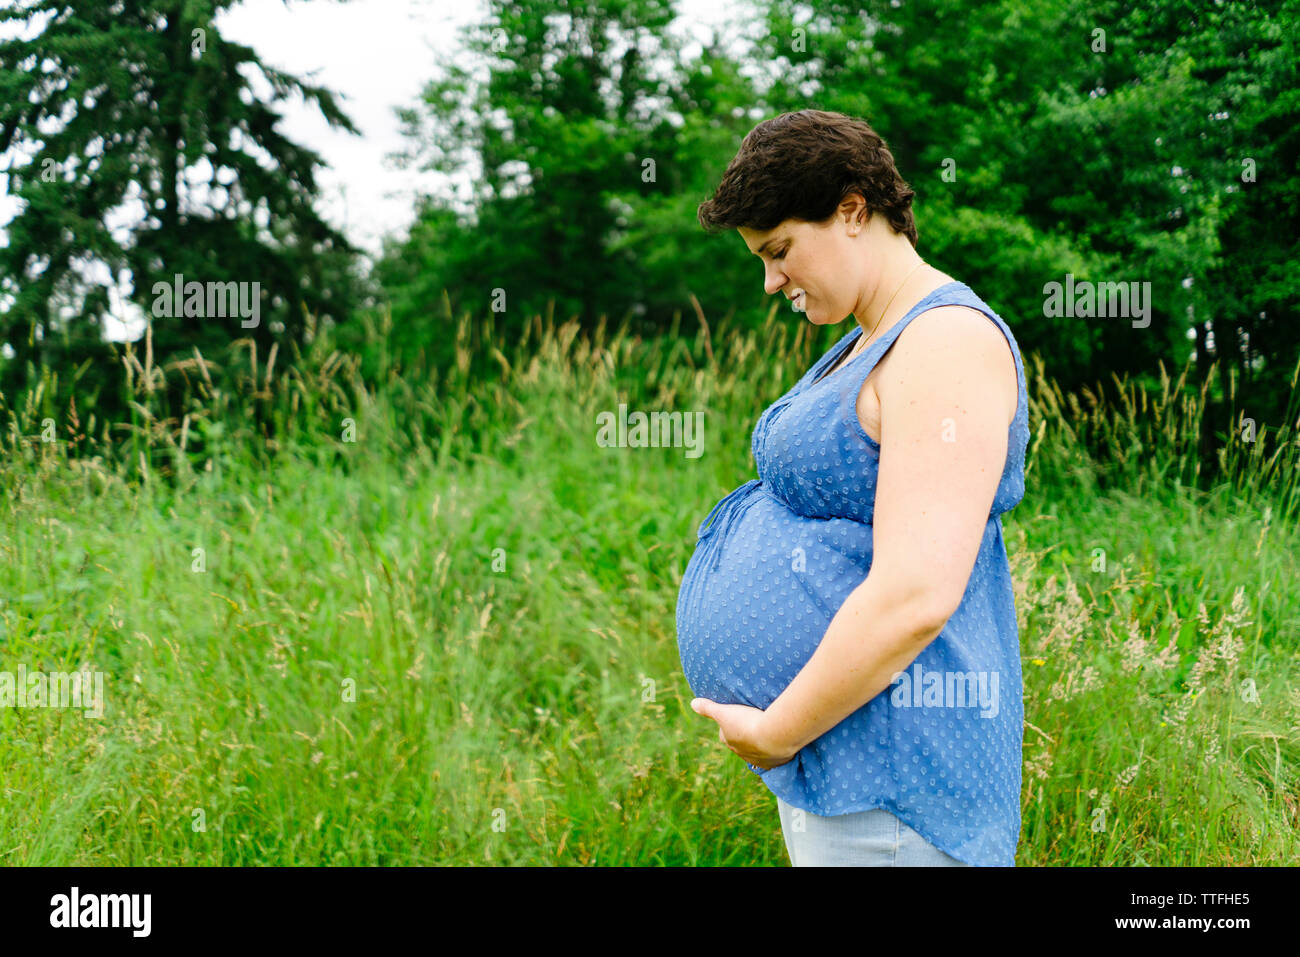 Seitliche Sicht auf eine schwangere Frau in ihrem Bauch nach unten schauen. Stockfoto